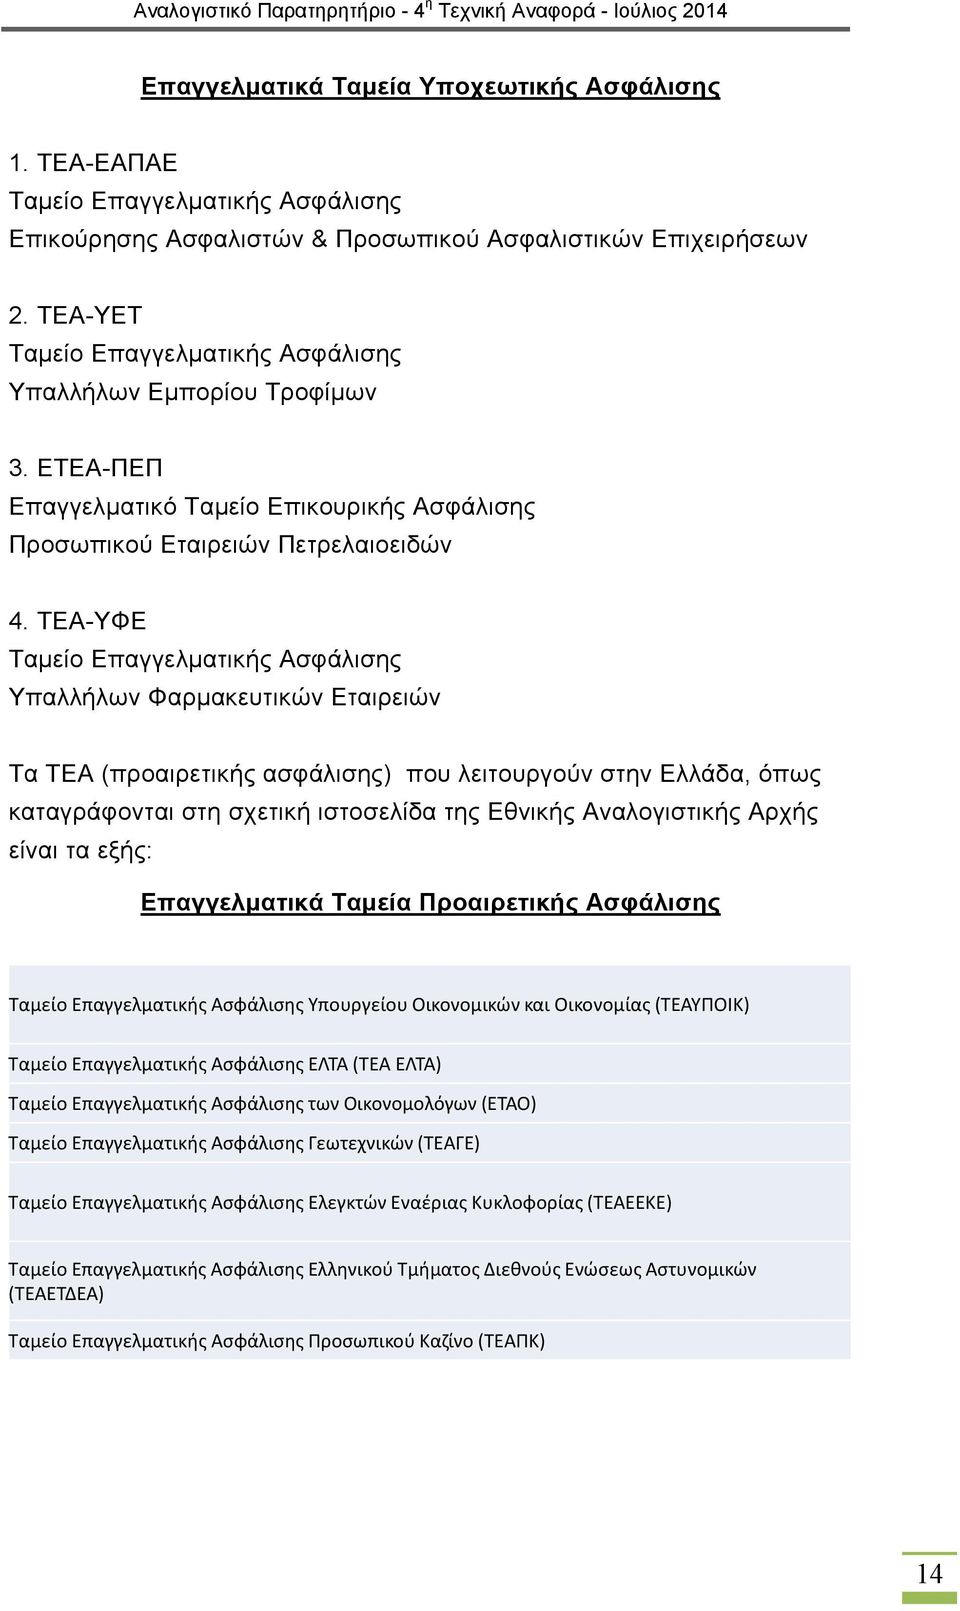 ΤΕΑ-ΥΦΕ Ταμείο Επαγγελματικής Ασφάλισης Υπαλλήλων Φαρμακευτικών Εταιρειών Τα ΤΕΑ (προαιρετικής ασφάλισης) που λειτουργούν στην Ελλάδα, όπως καταγράφονται στη σχετική ιστοσελίδα της Εθνικής